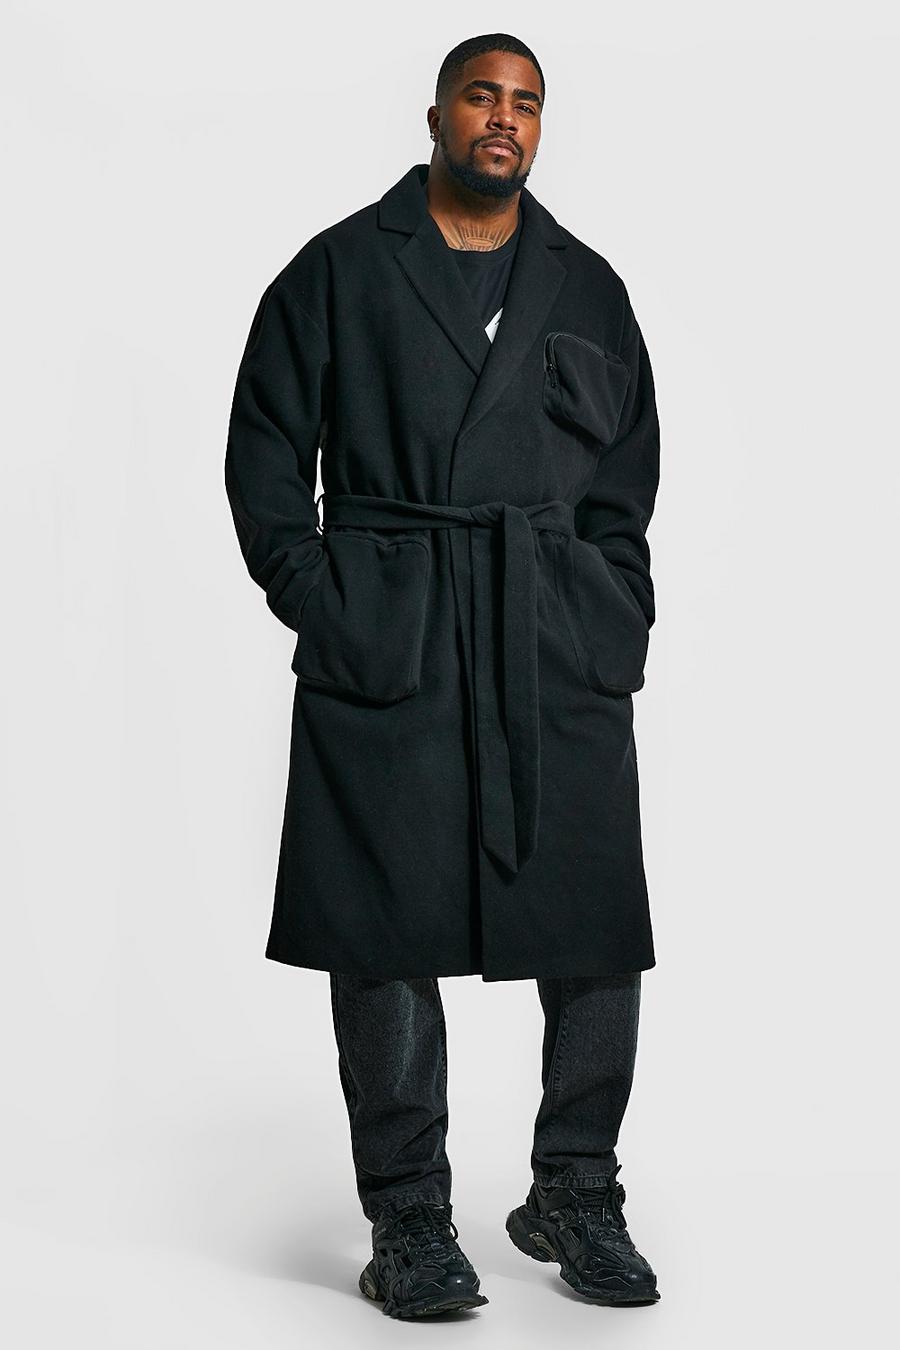 Black מעיל עליון בסגנון שימושי עם כיסי תלת-ממד וחגורה, מידות גדולות